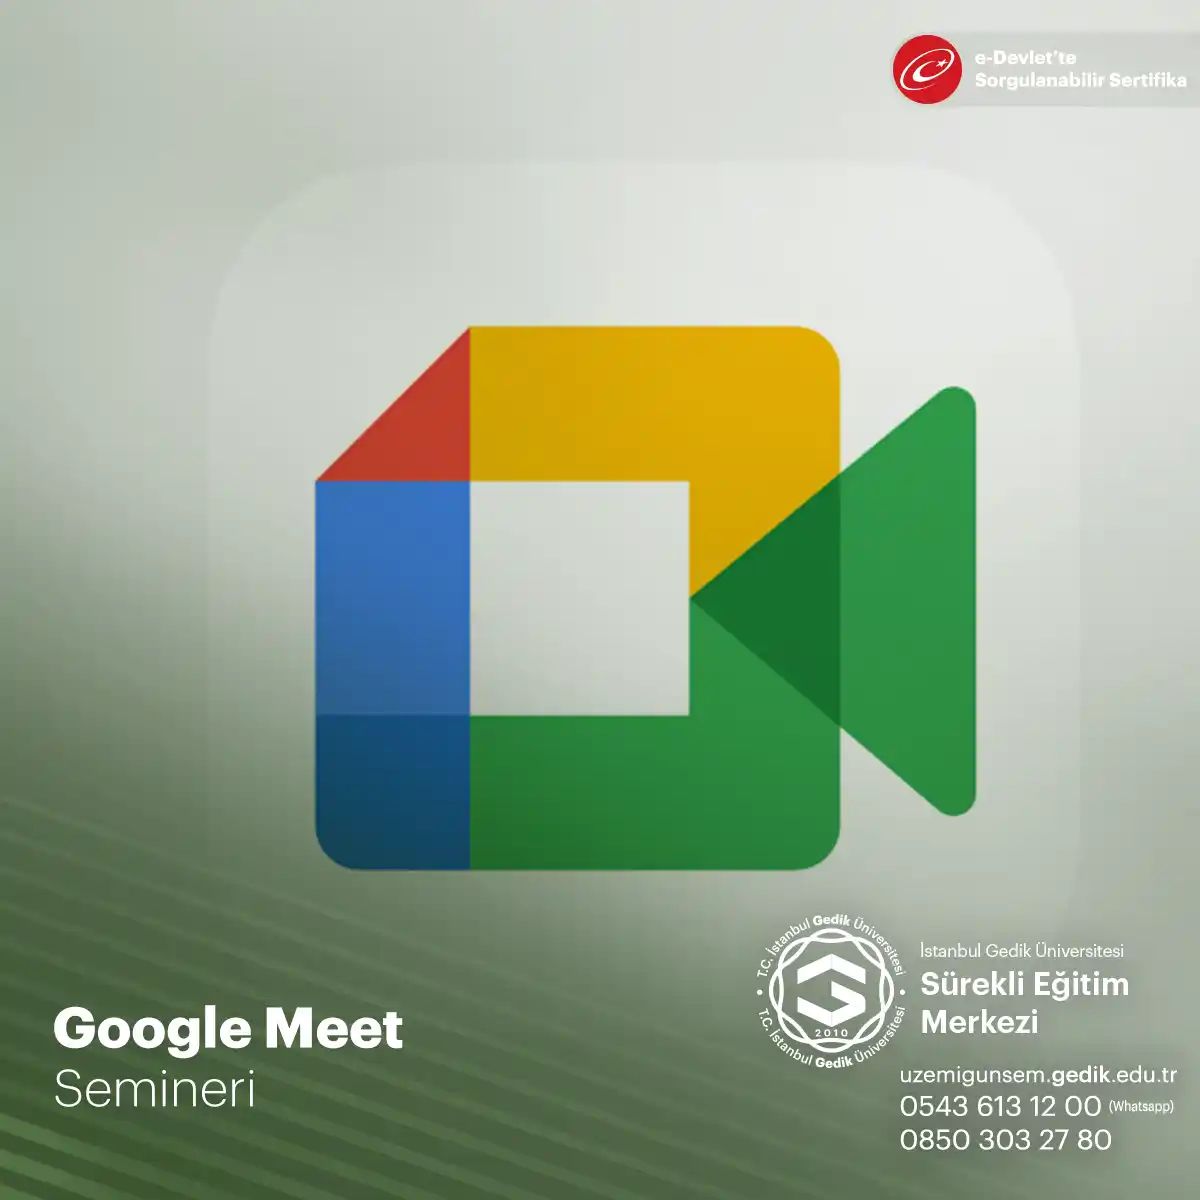 Google Meet, kullanıcı dostu bir arayüz sunar ve Google hesabı olan herkes tarafından kolayca erişilebilir.